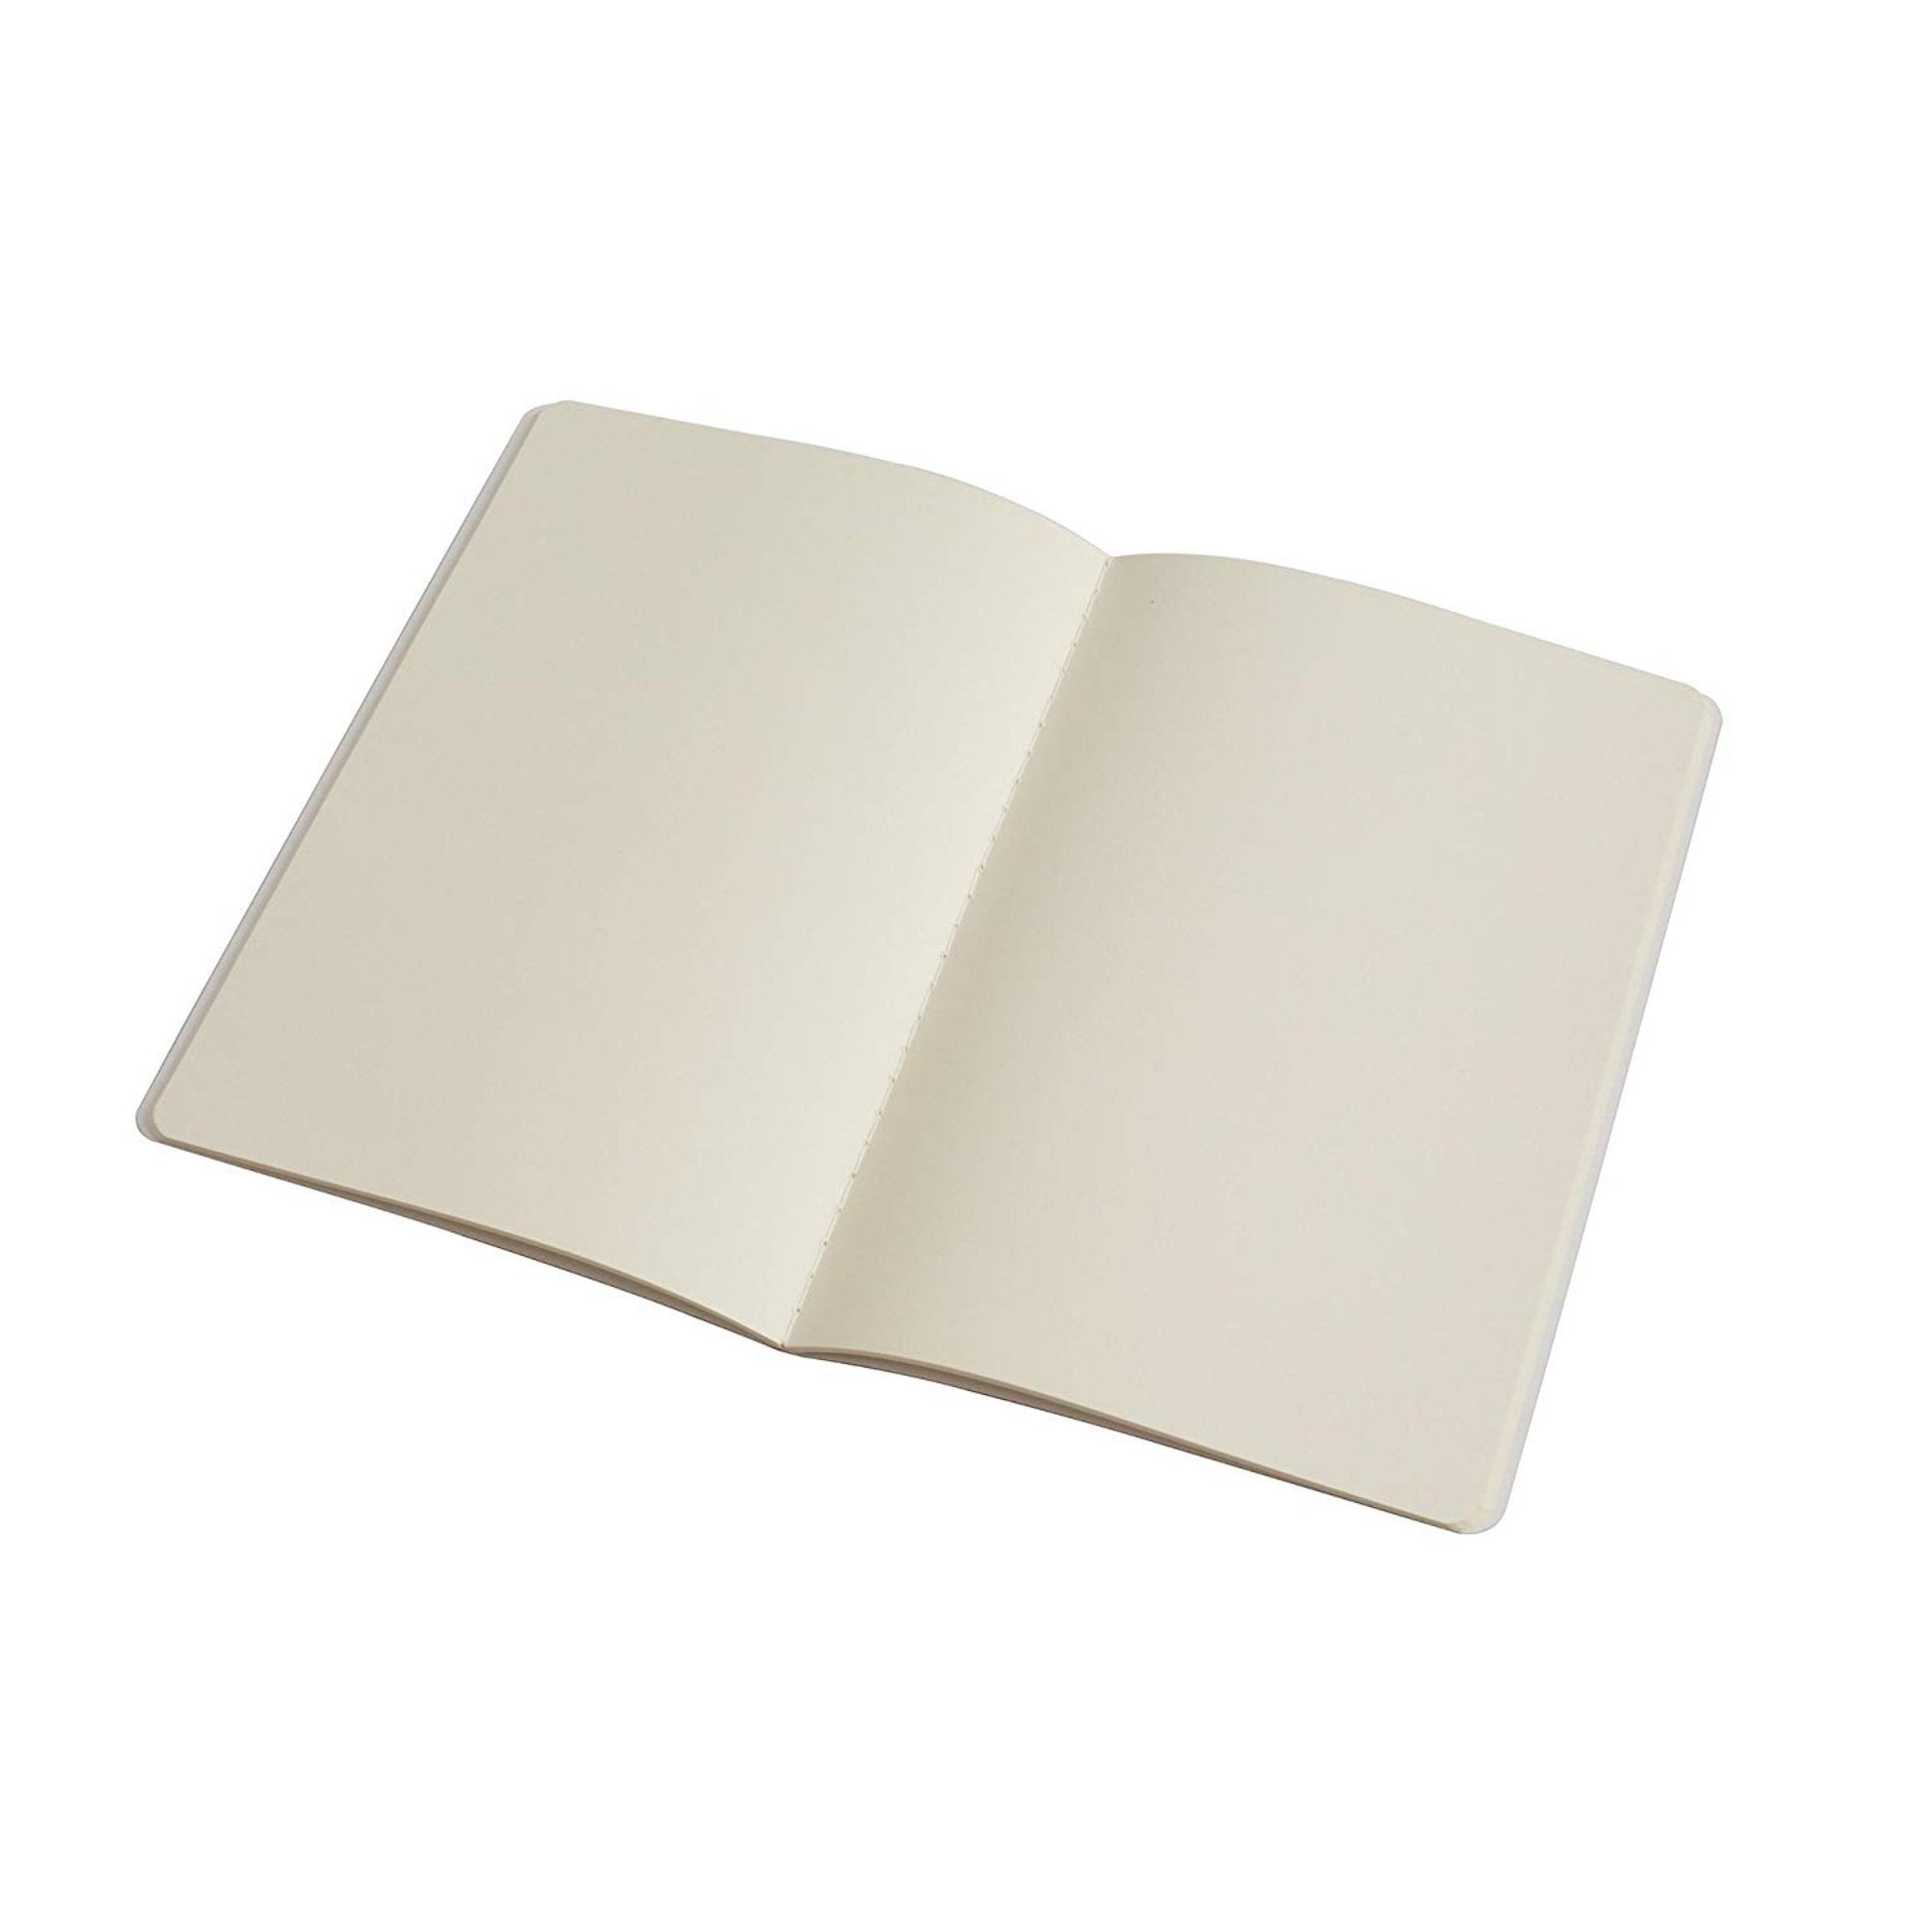 PinkPolish Design Notebook "Morel Home" Notebook / Sketchbook / Journal